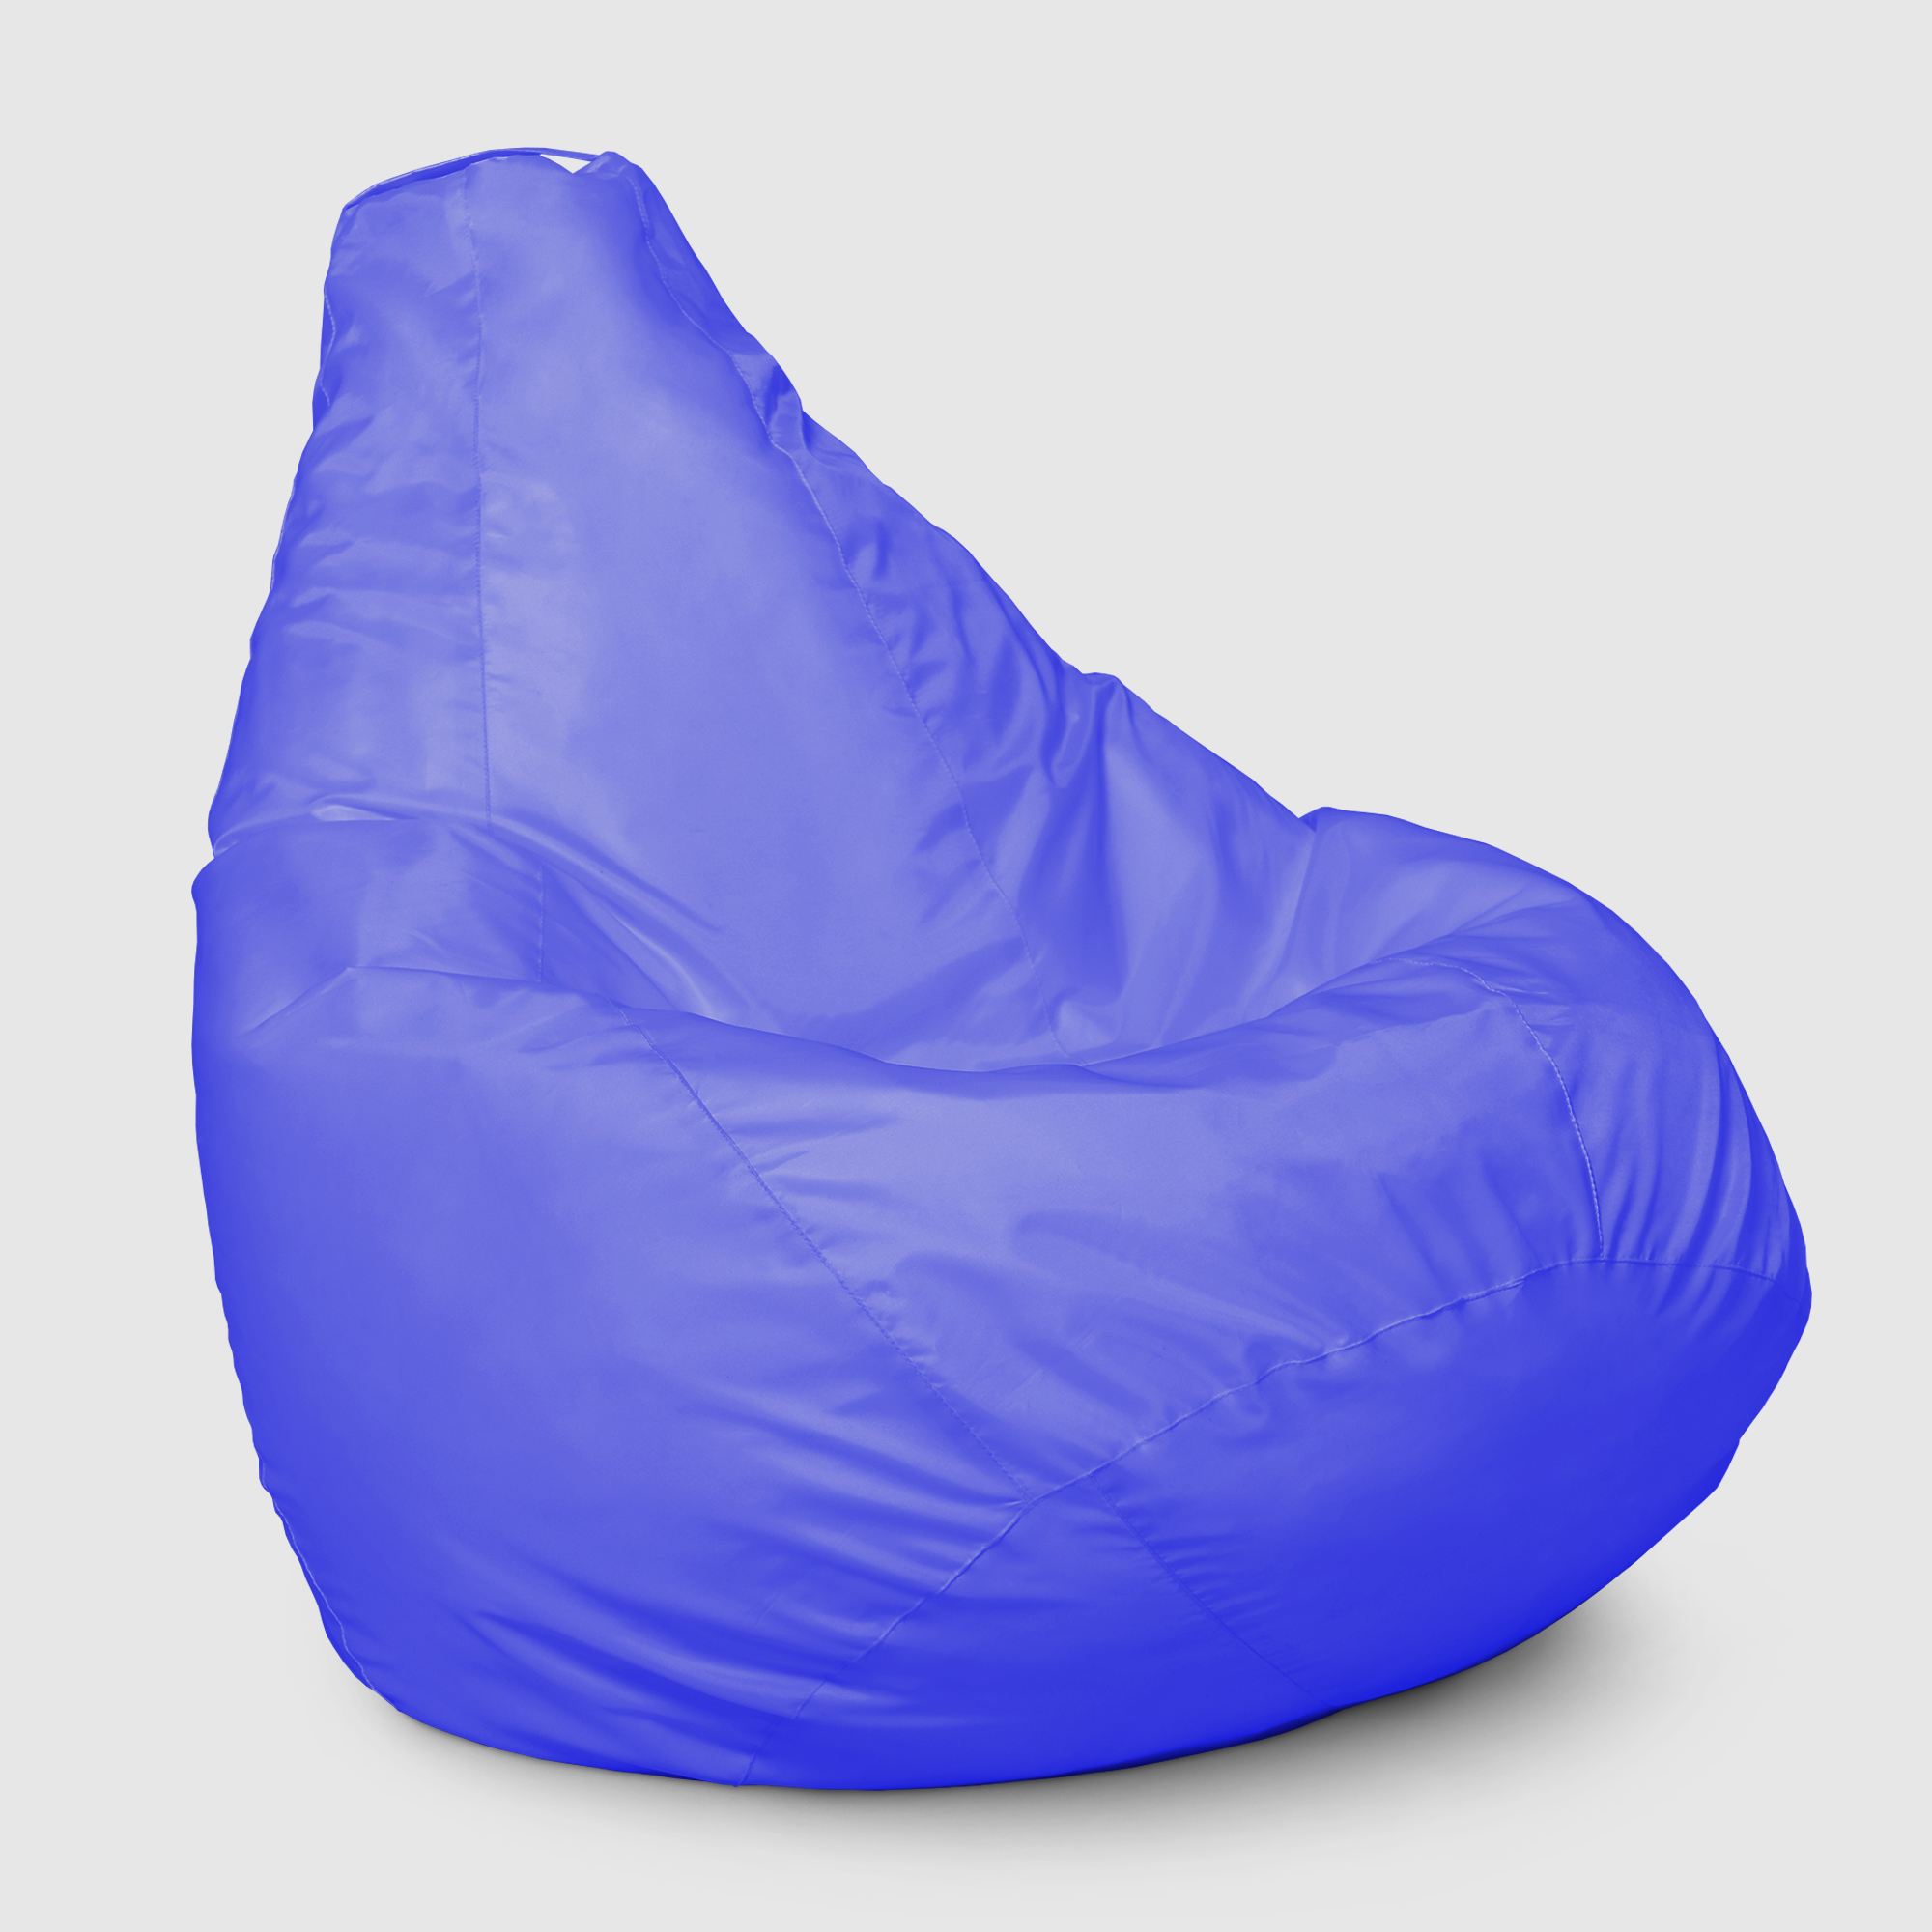 Кресло мешок Dreambag Меган xl Синее 85х85х125 см кресло мешок dreambag меган xl белое 85х85х125см